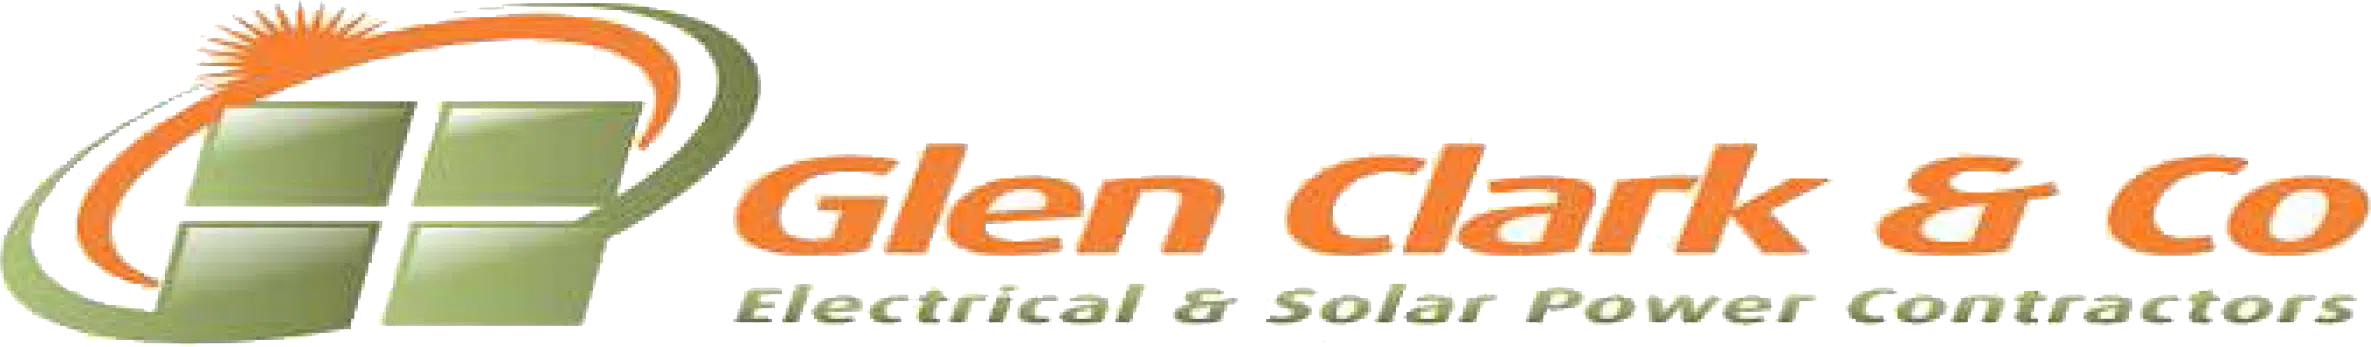 Glen Clark and Co logo